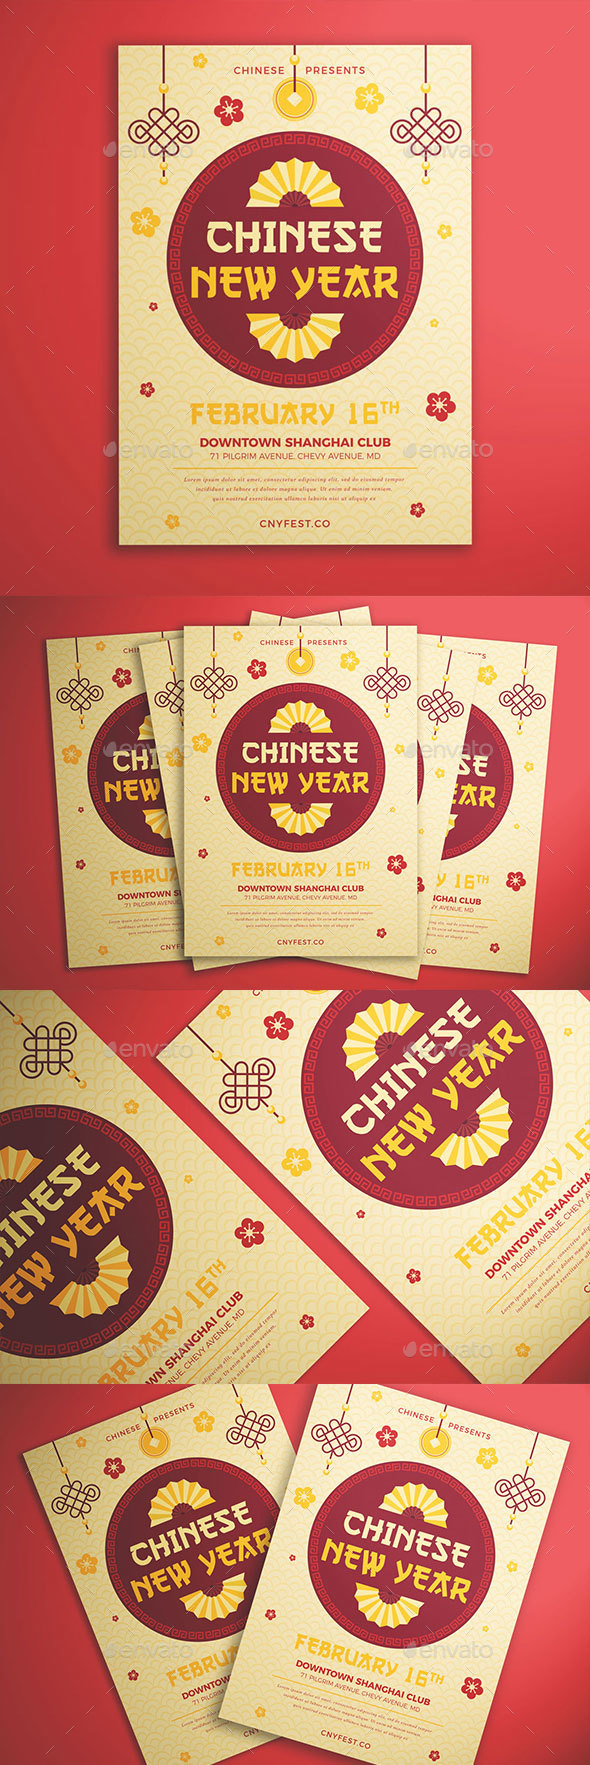 بروشور سال نوی چینی